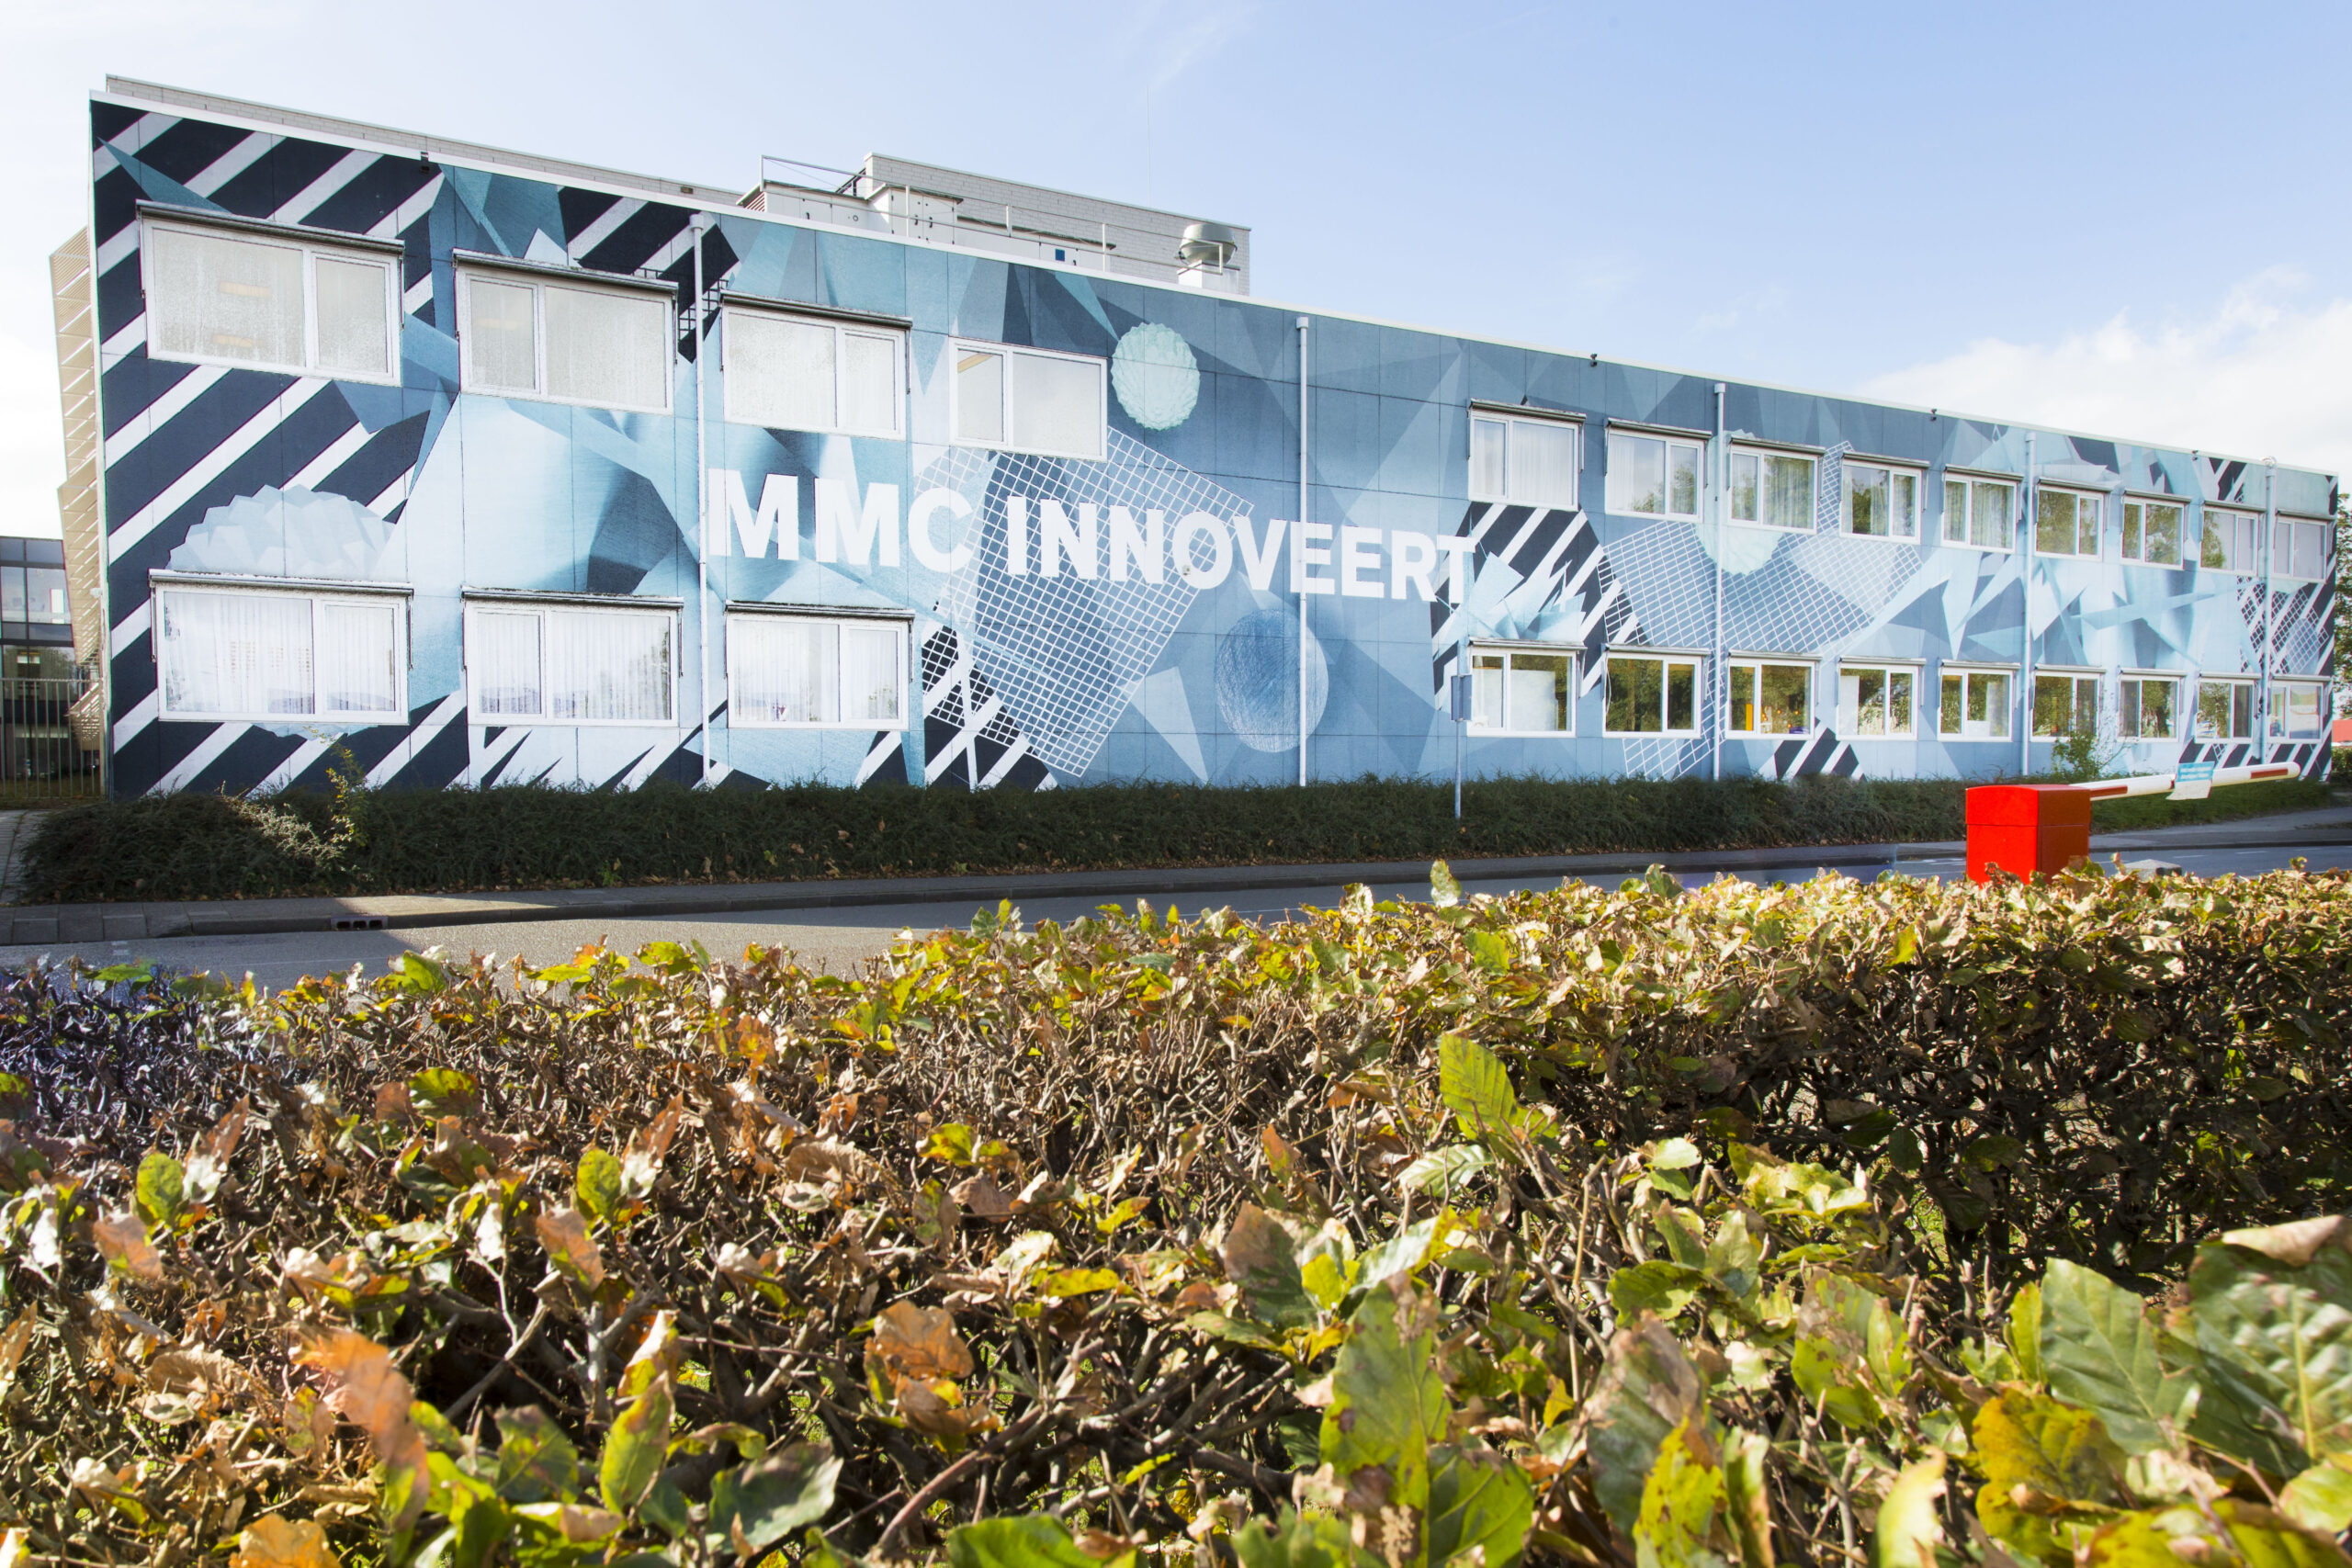 Ondanks bomvolle agenda’s ziekenhuizen toegankelijker maken voor innovatie: zo doen ze dat in het MMC